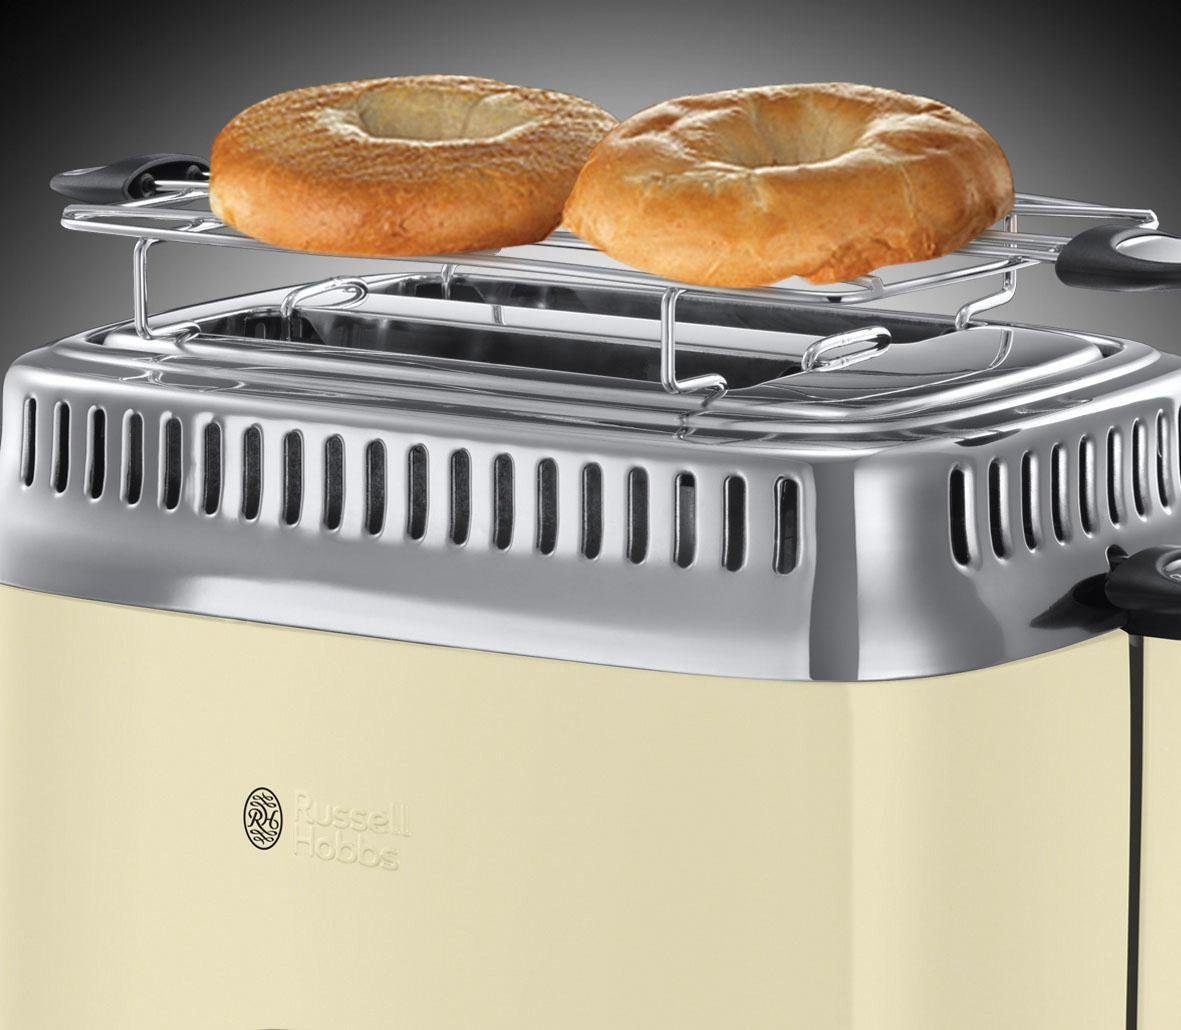 RUSSELL HOBBS Toaster Beige W, Schlitze, Cream kurze 21682-56, 1300 2 Retro Vintage